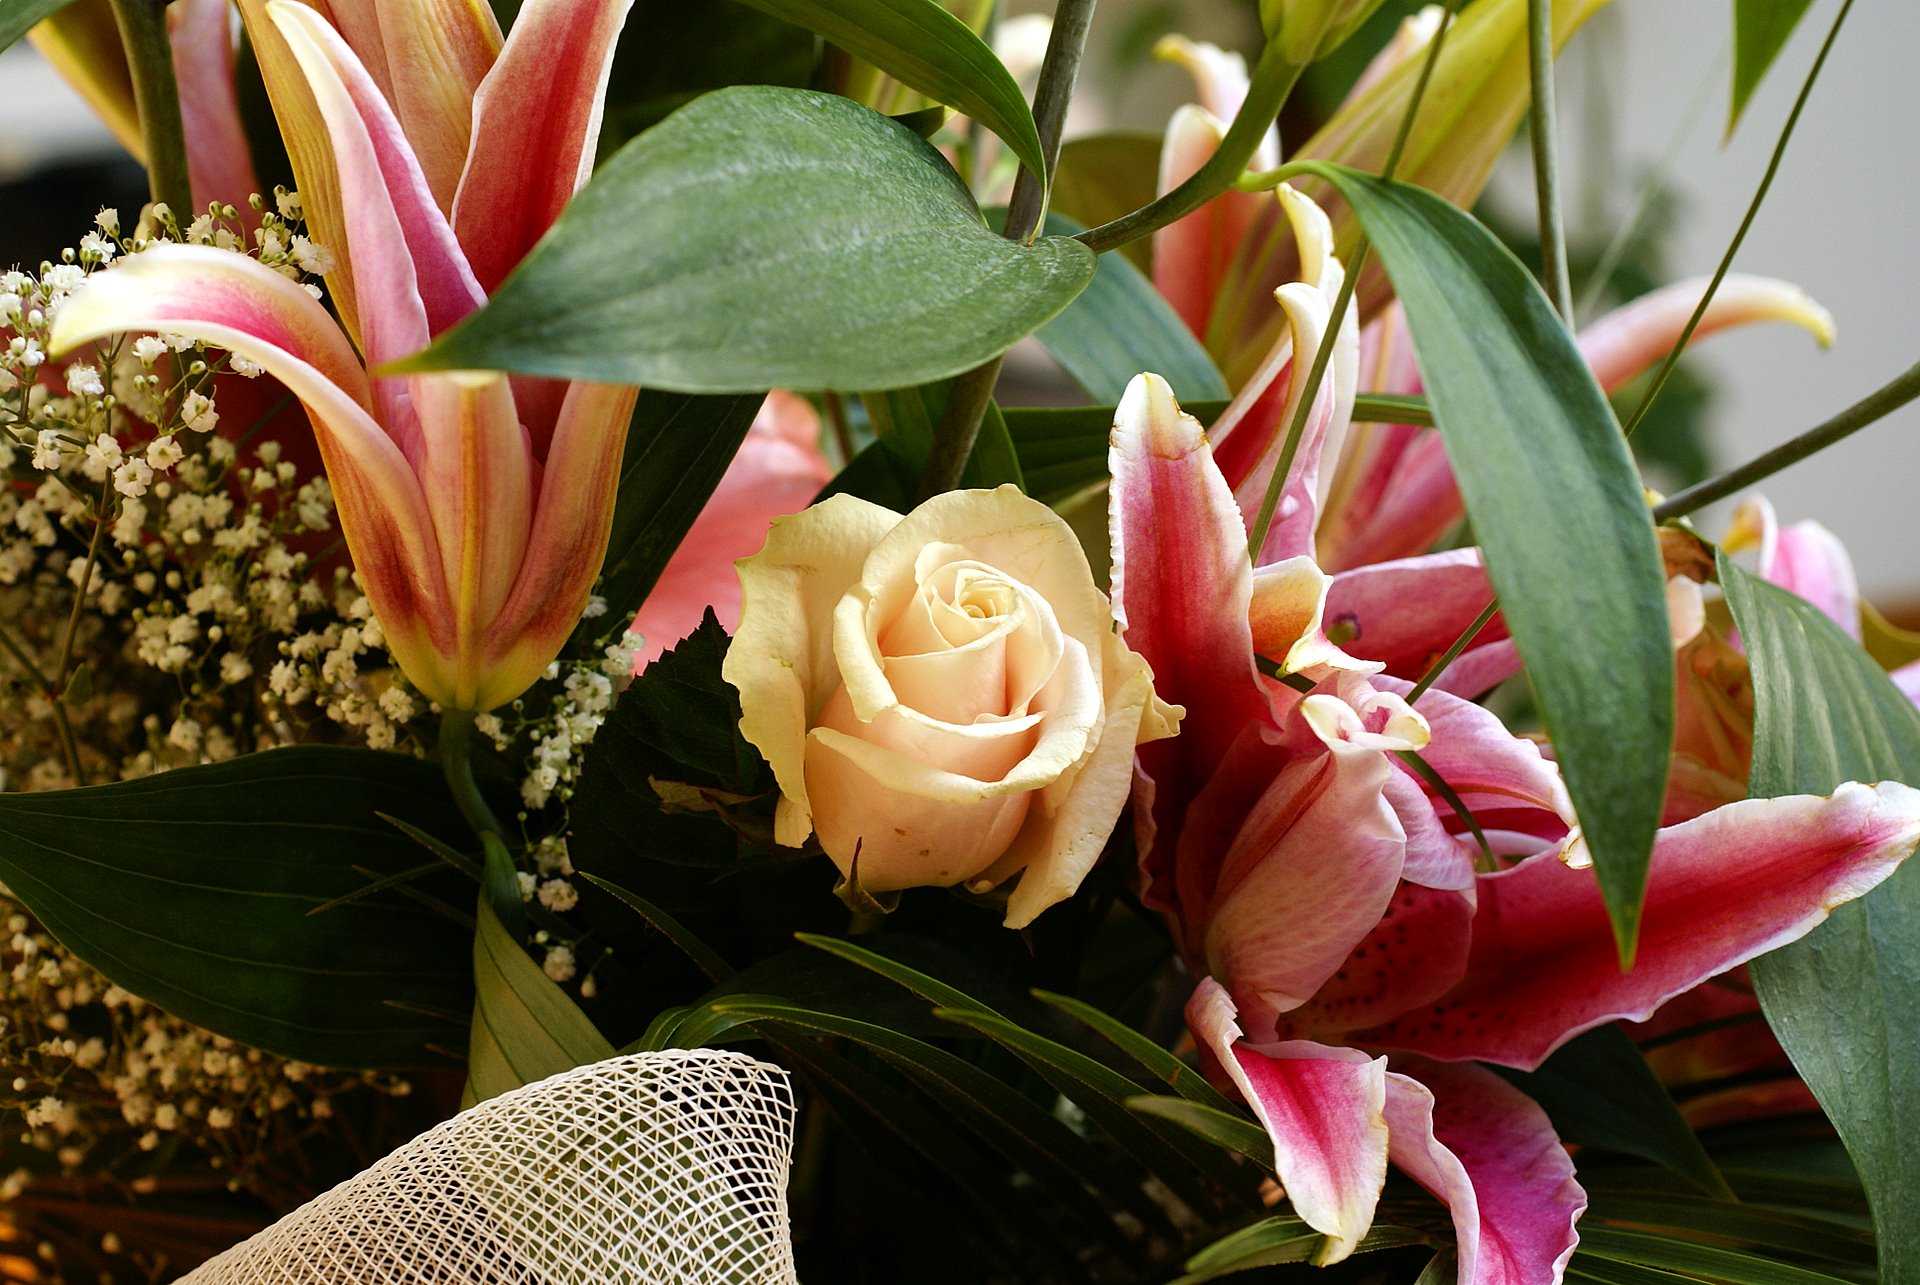 lilium-and-peach-rose-bouquet-00774.jpg